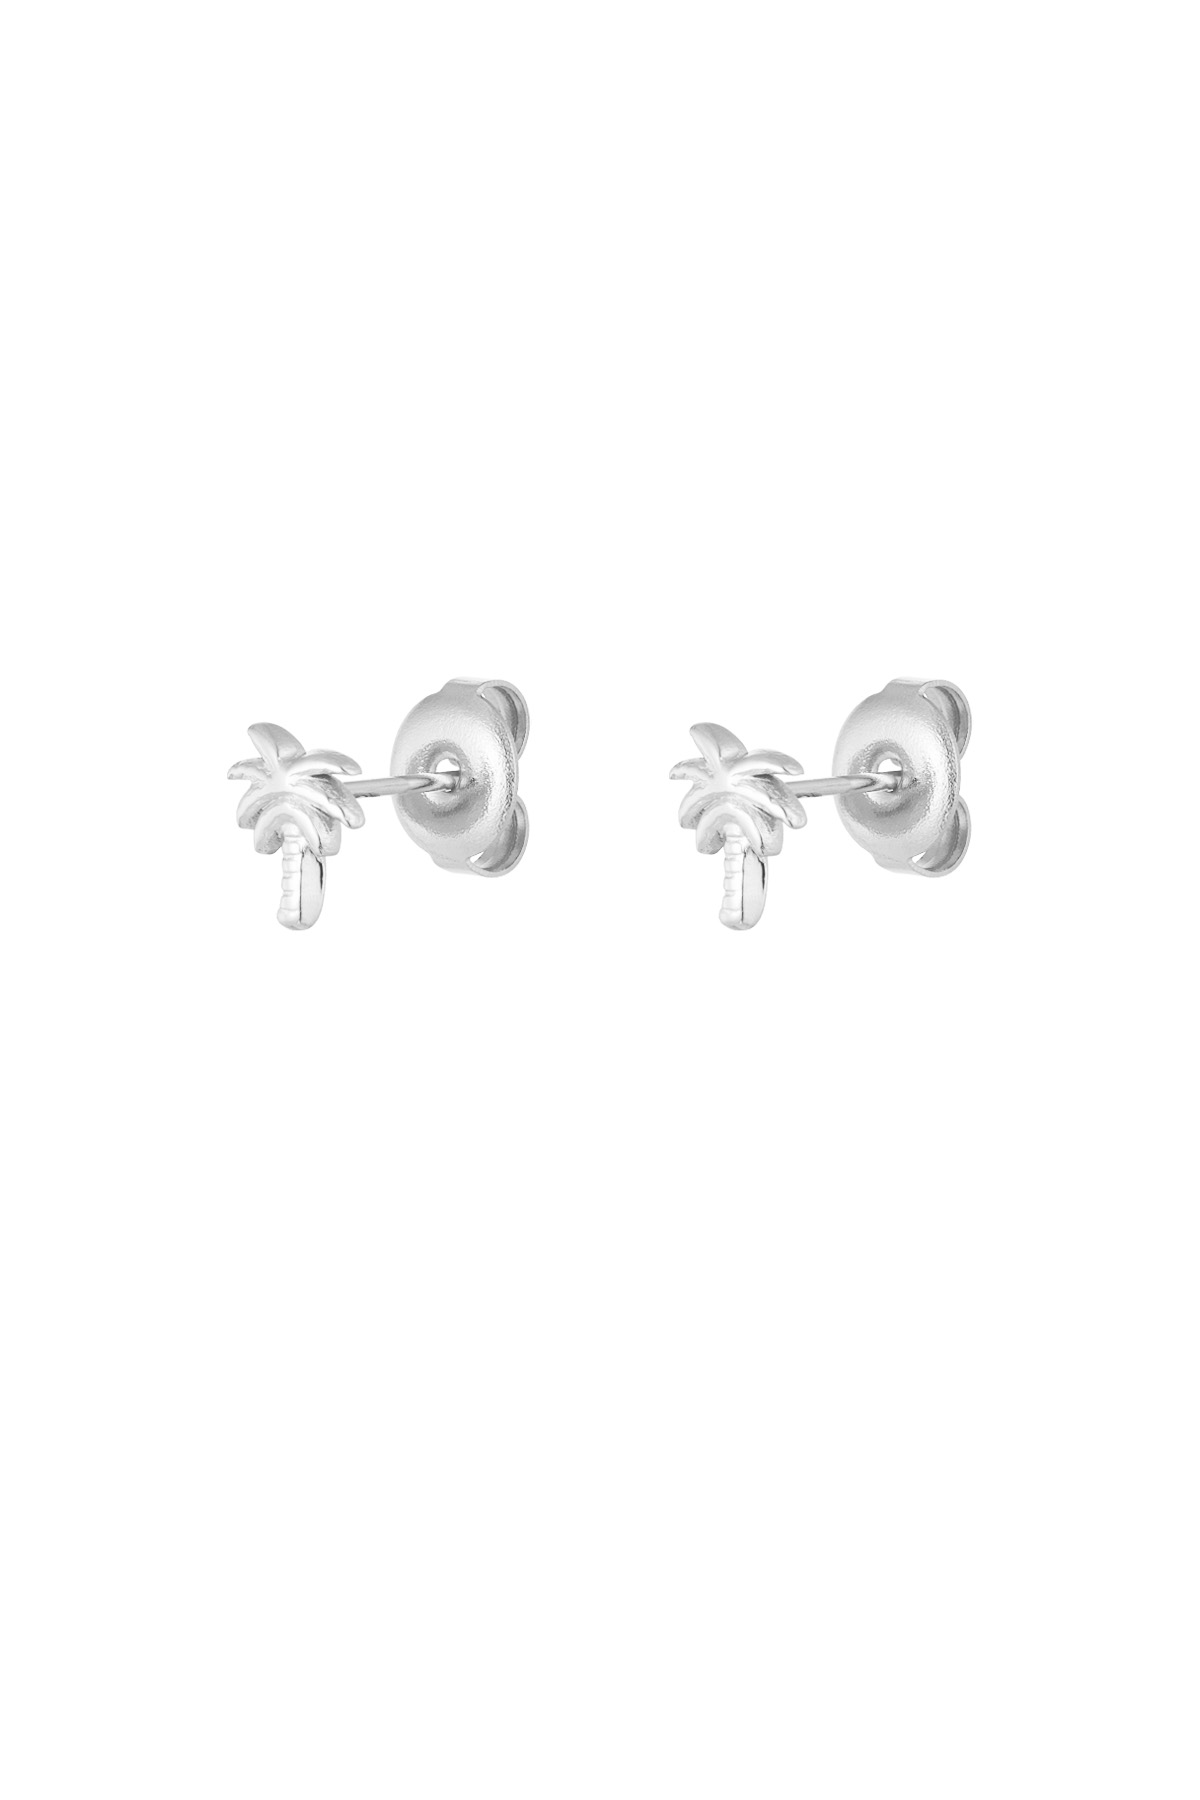 Palm tree stud earrings - silver